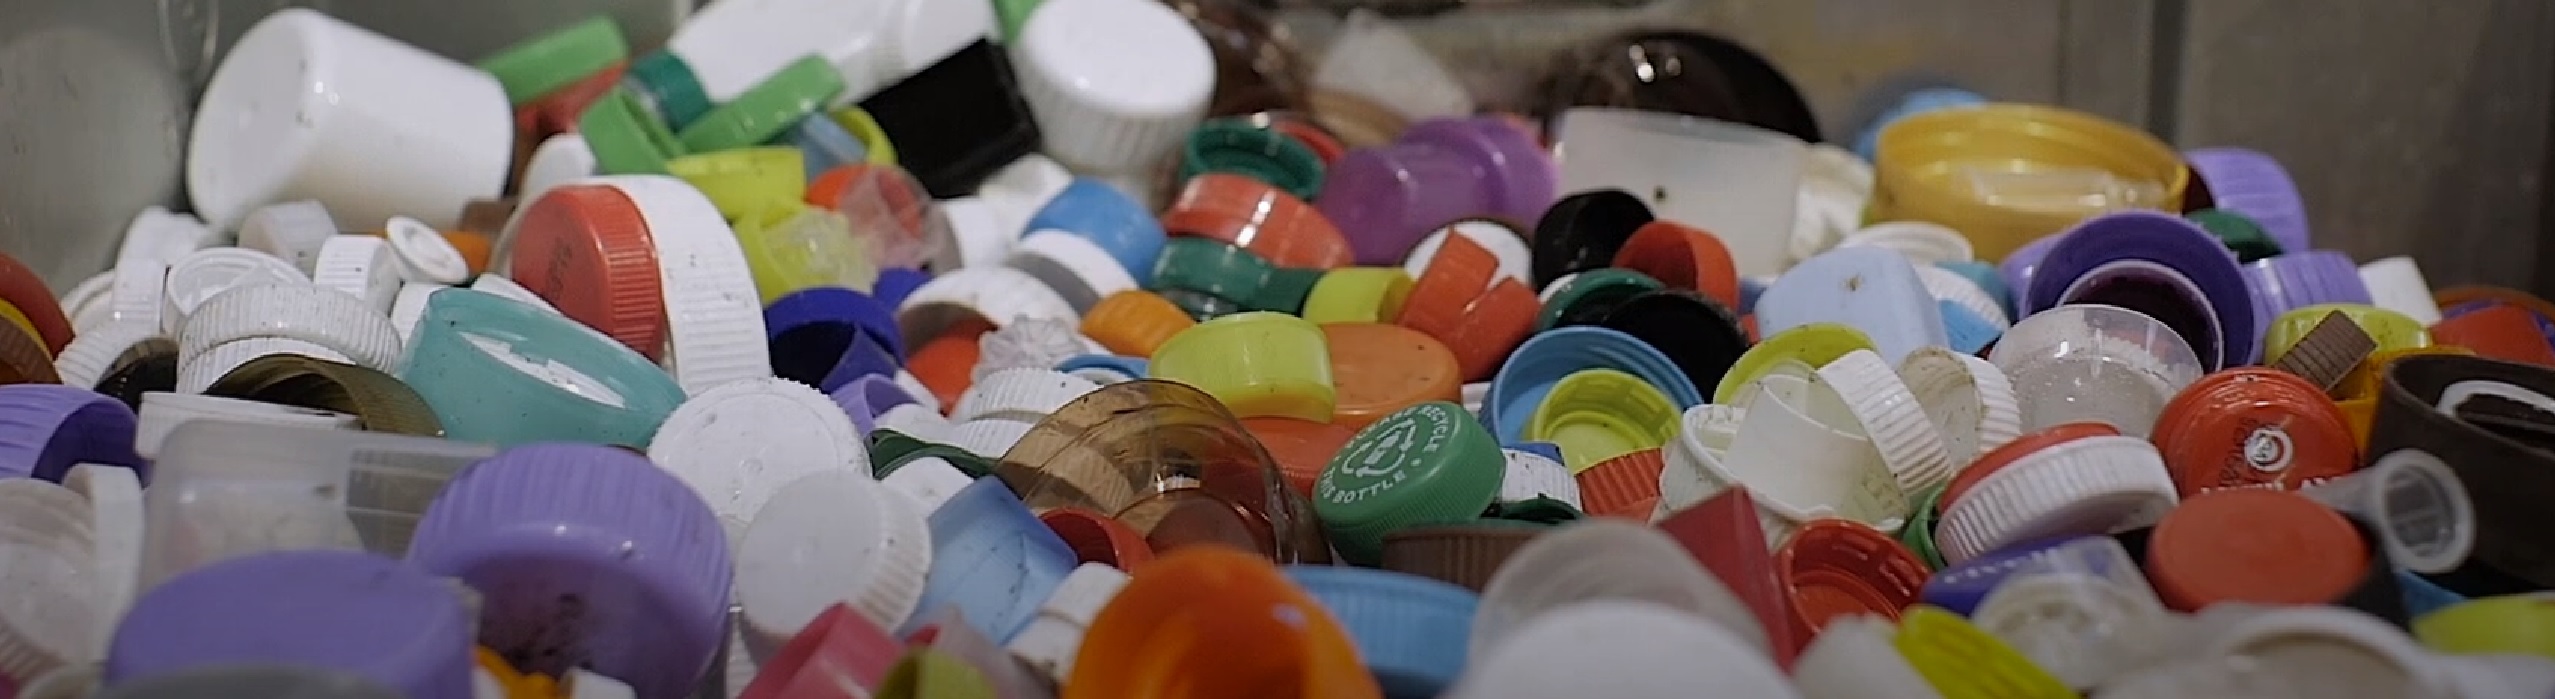 plastic doppen recyclen